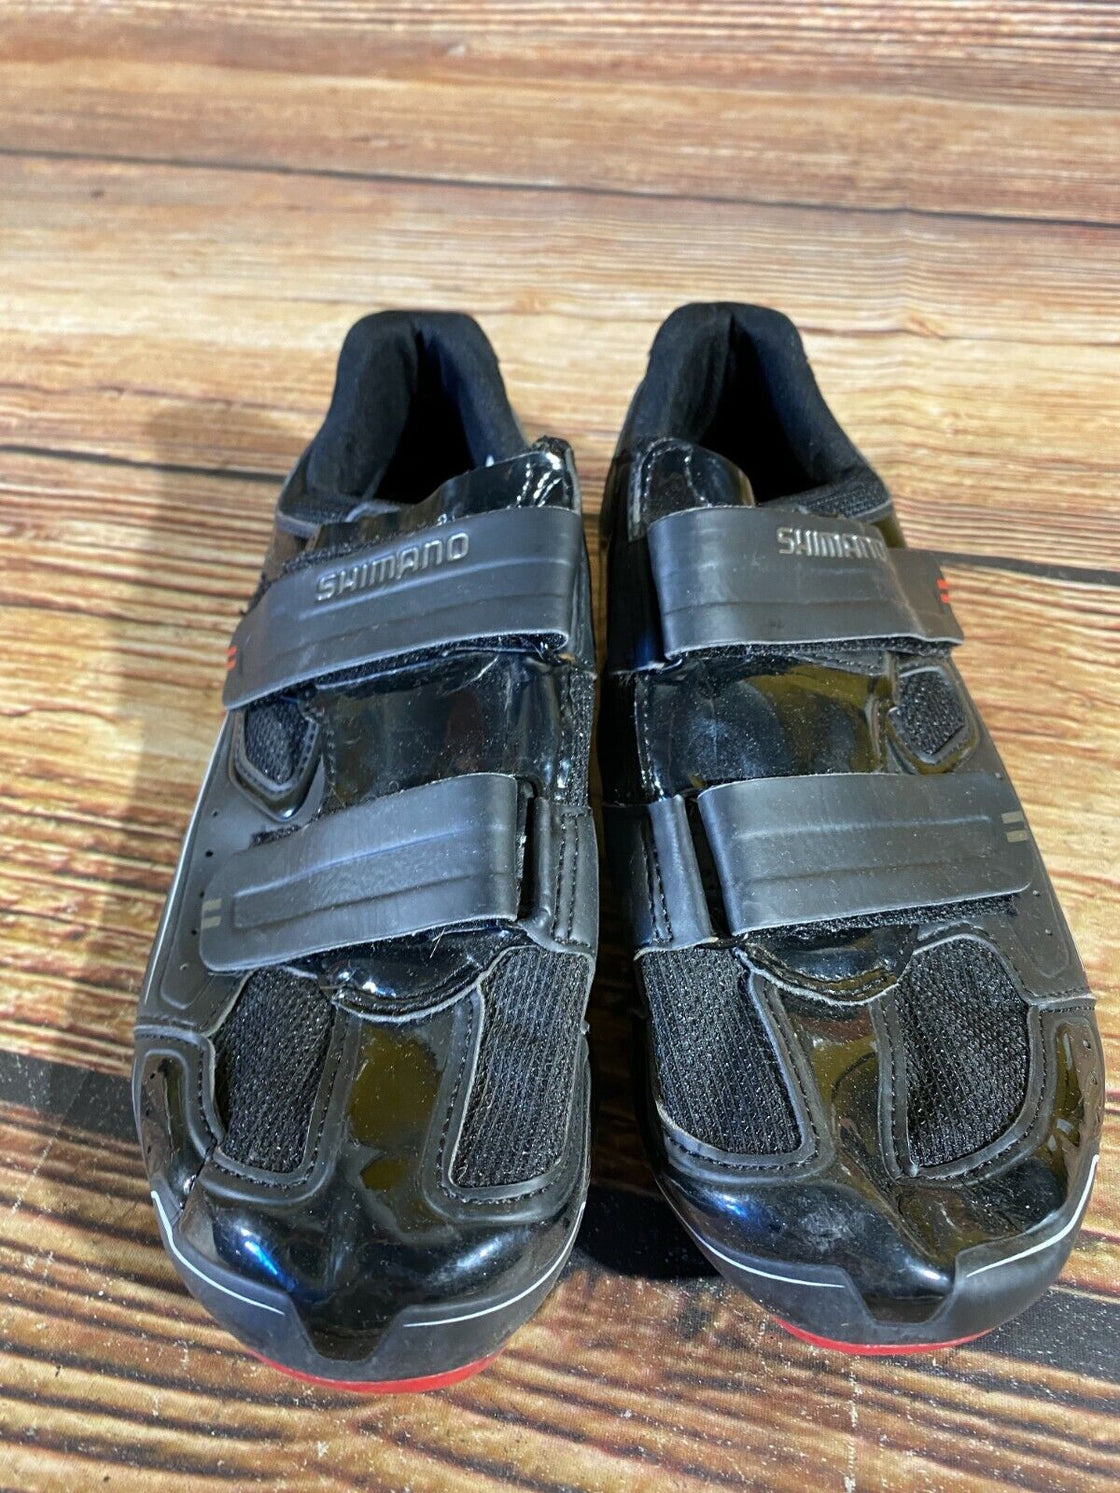 SHIMANO R065 Road Cycling Shoes Biking Boots 3 Bolts Size EU43, US8.9